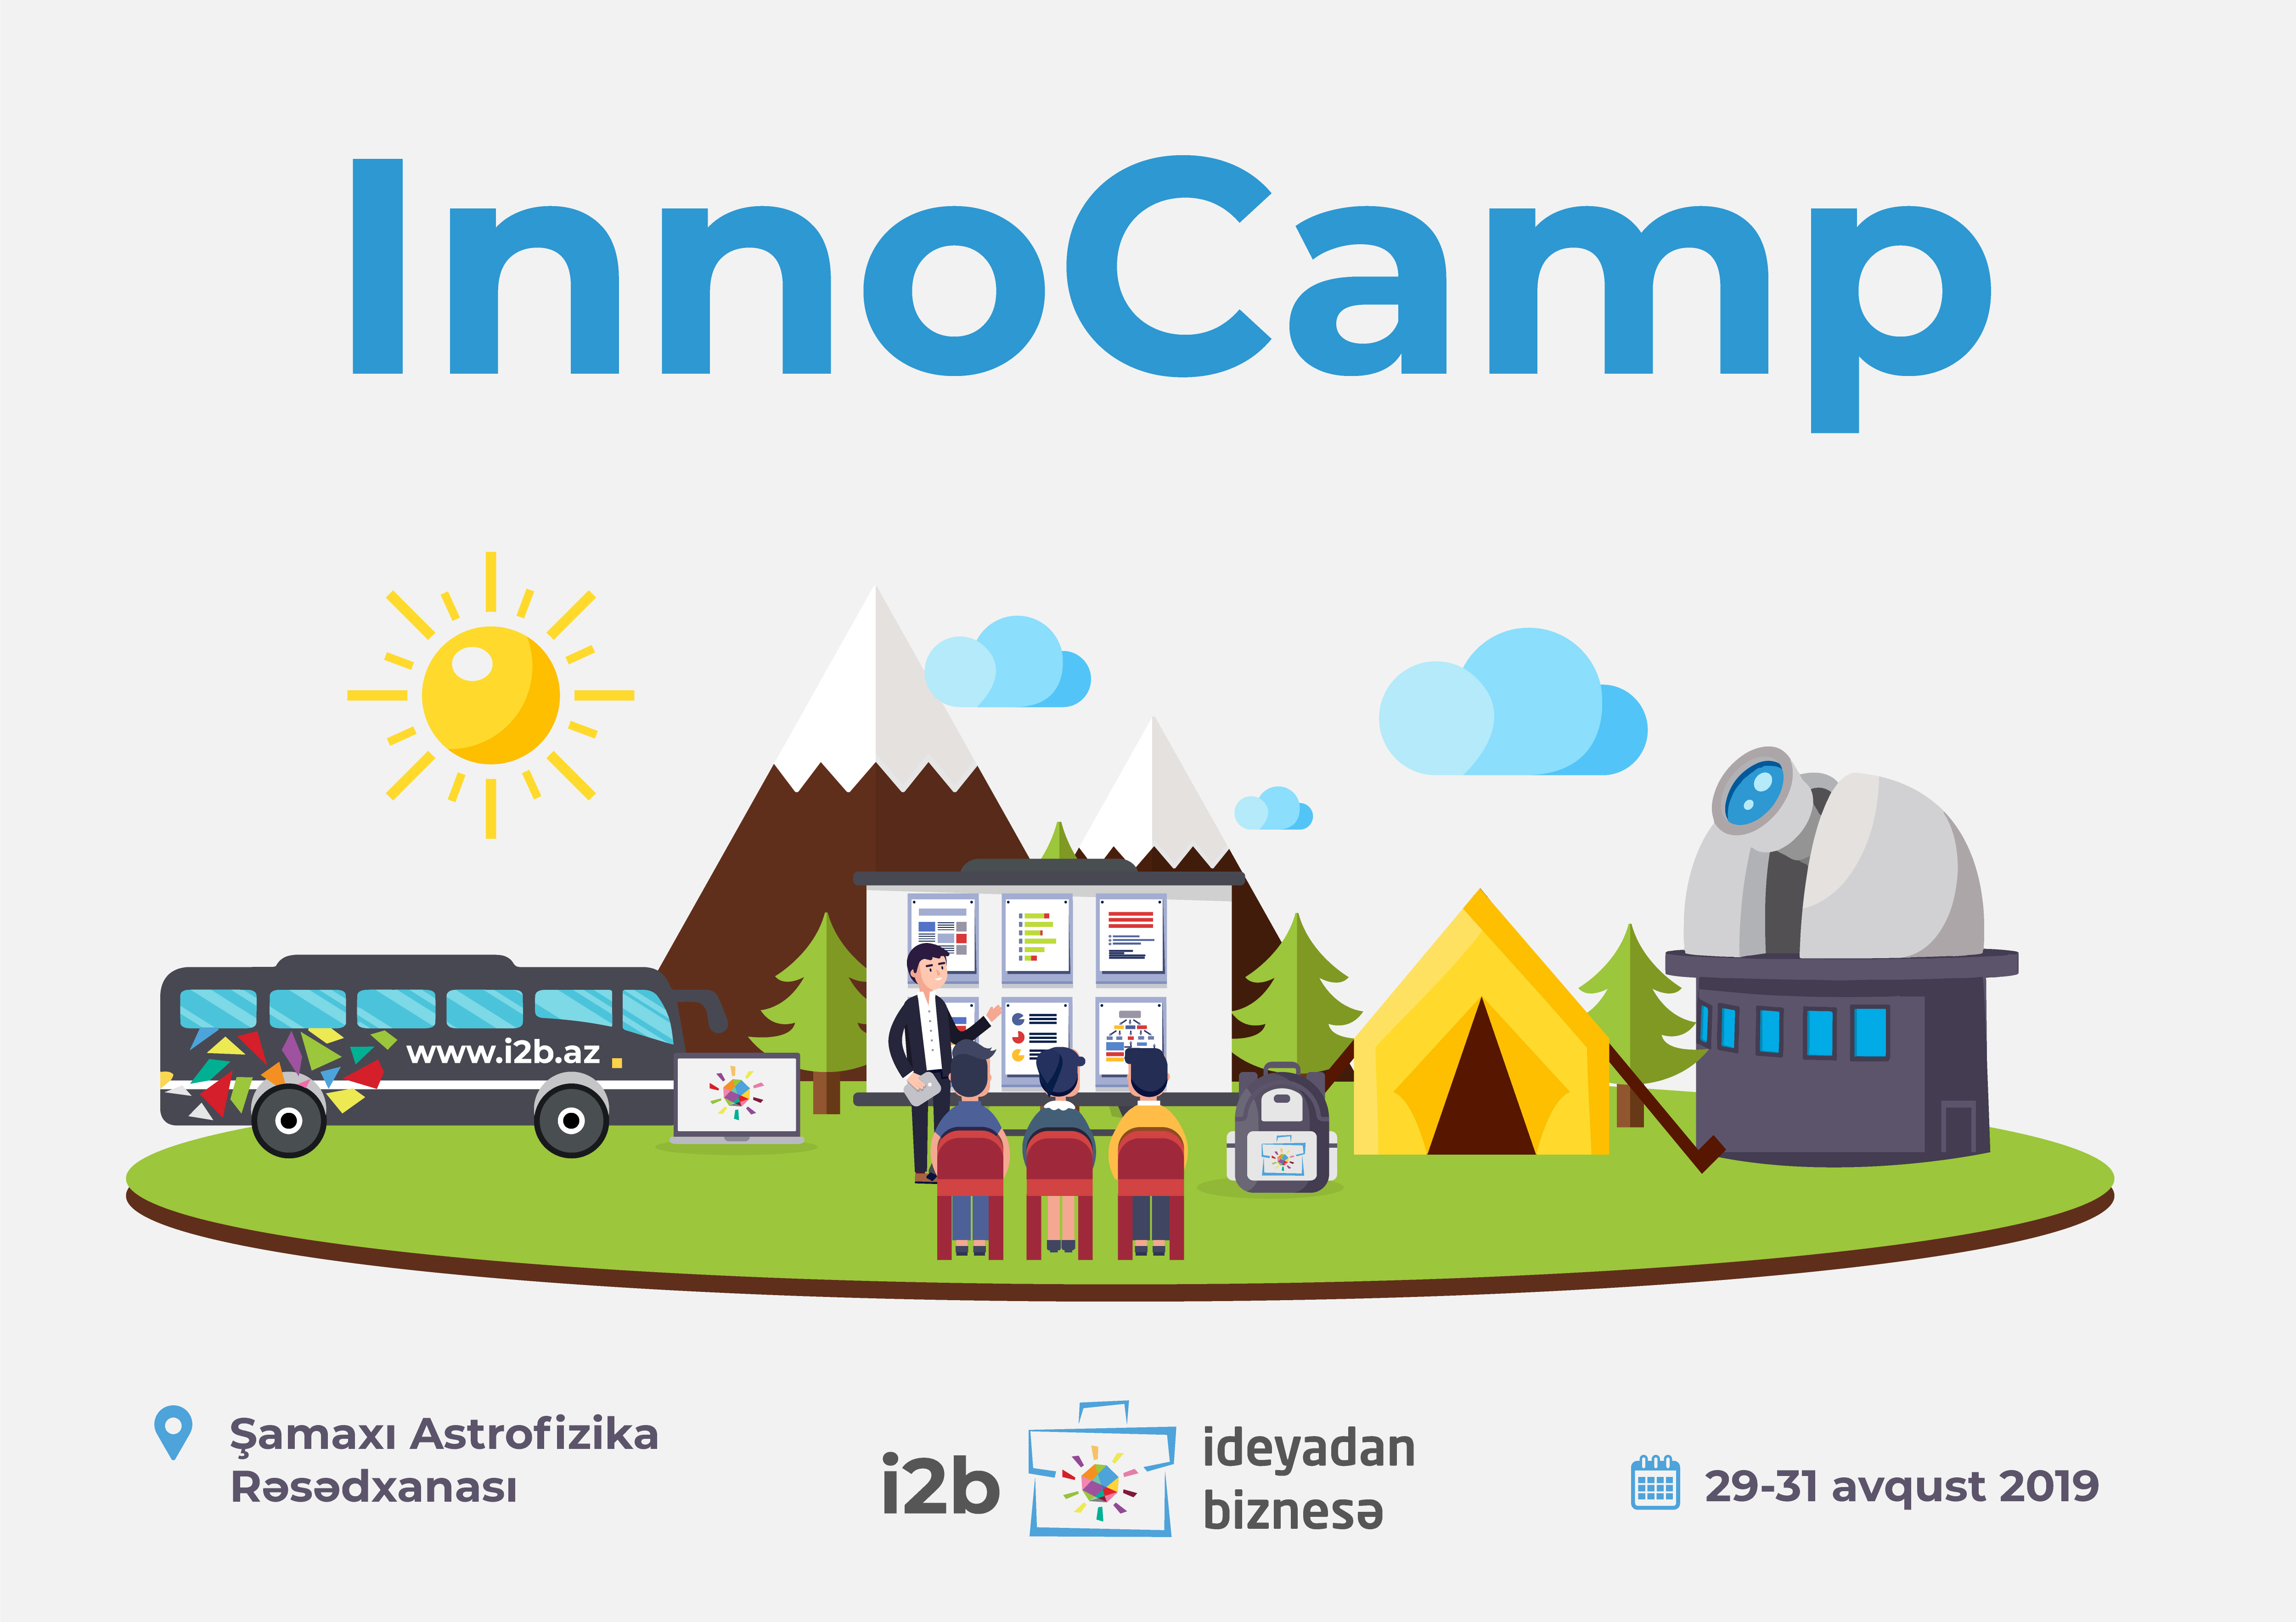 Инновационный летний лагерь "Innocamp" пройдет в Шамахе